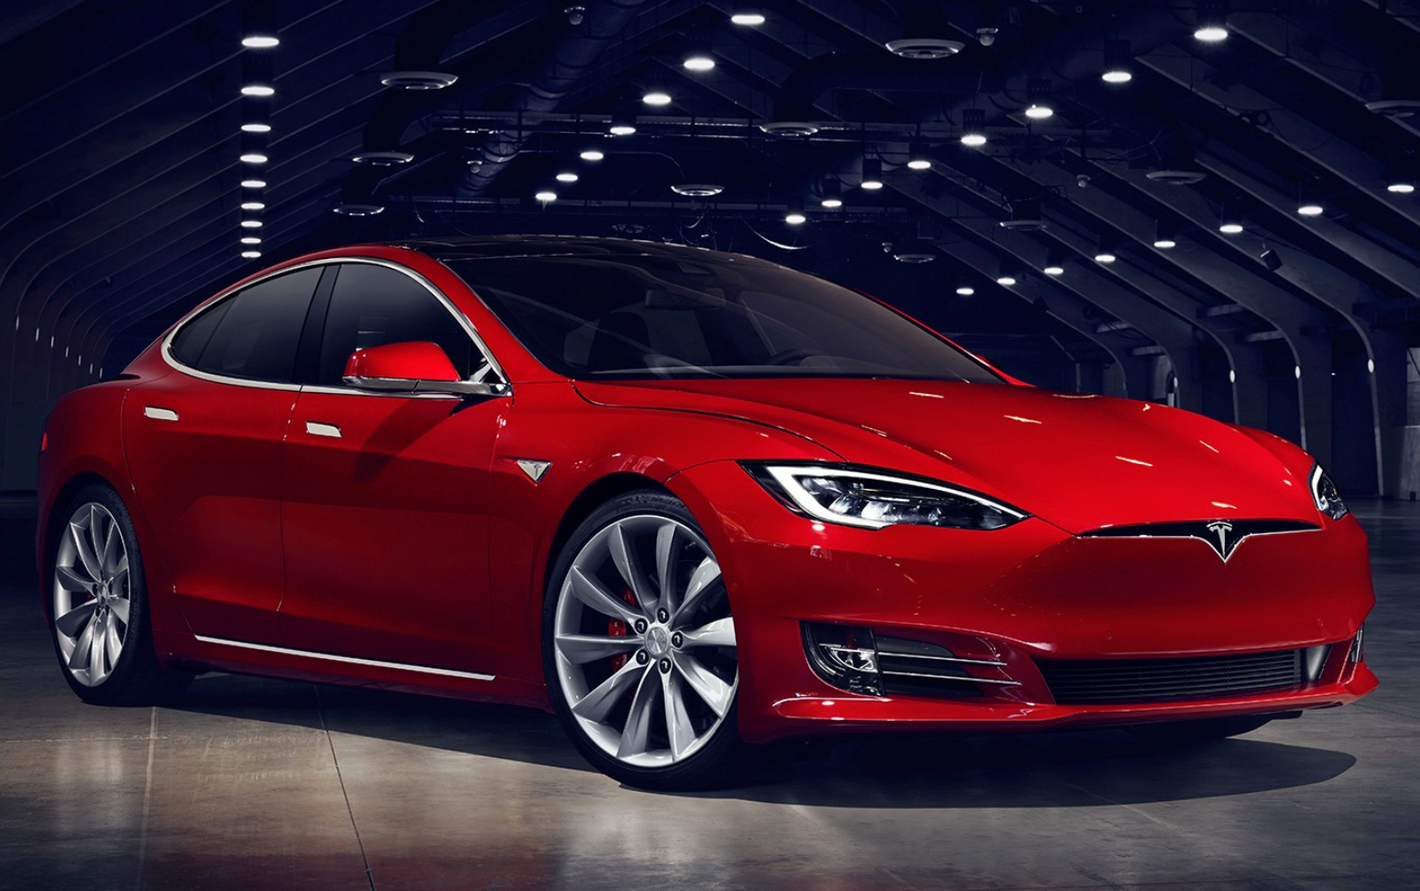 Laadkabel Tesla Model S (vanaf 2016)